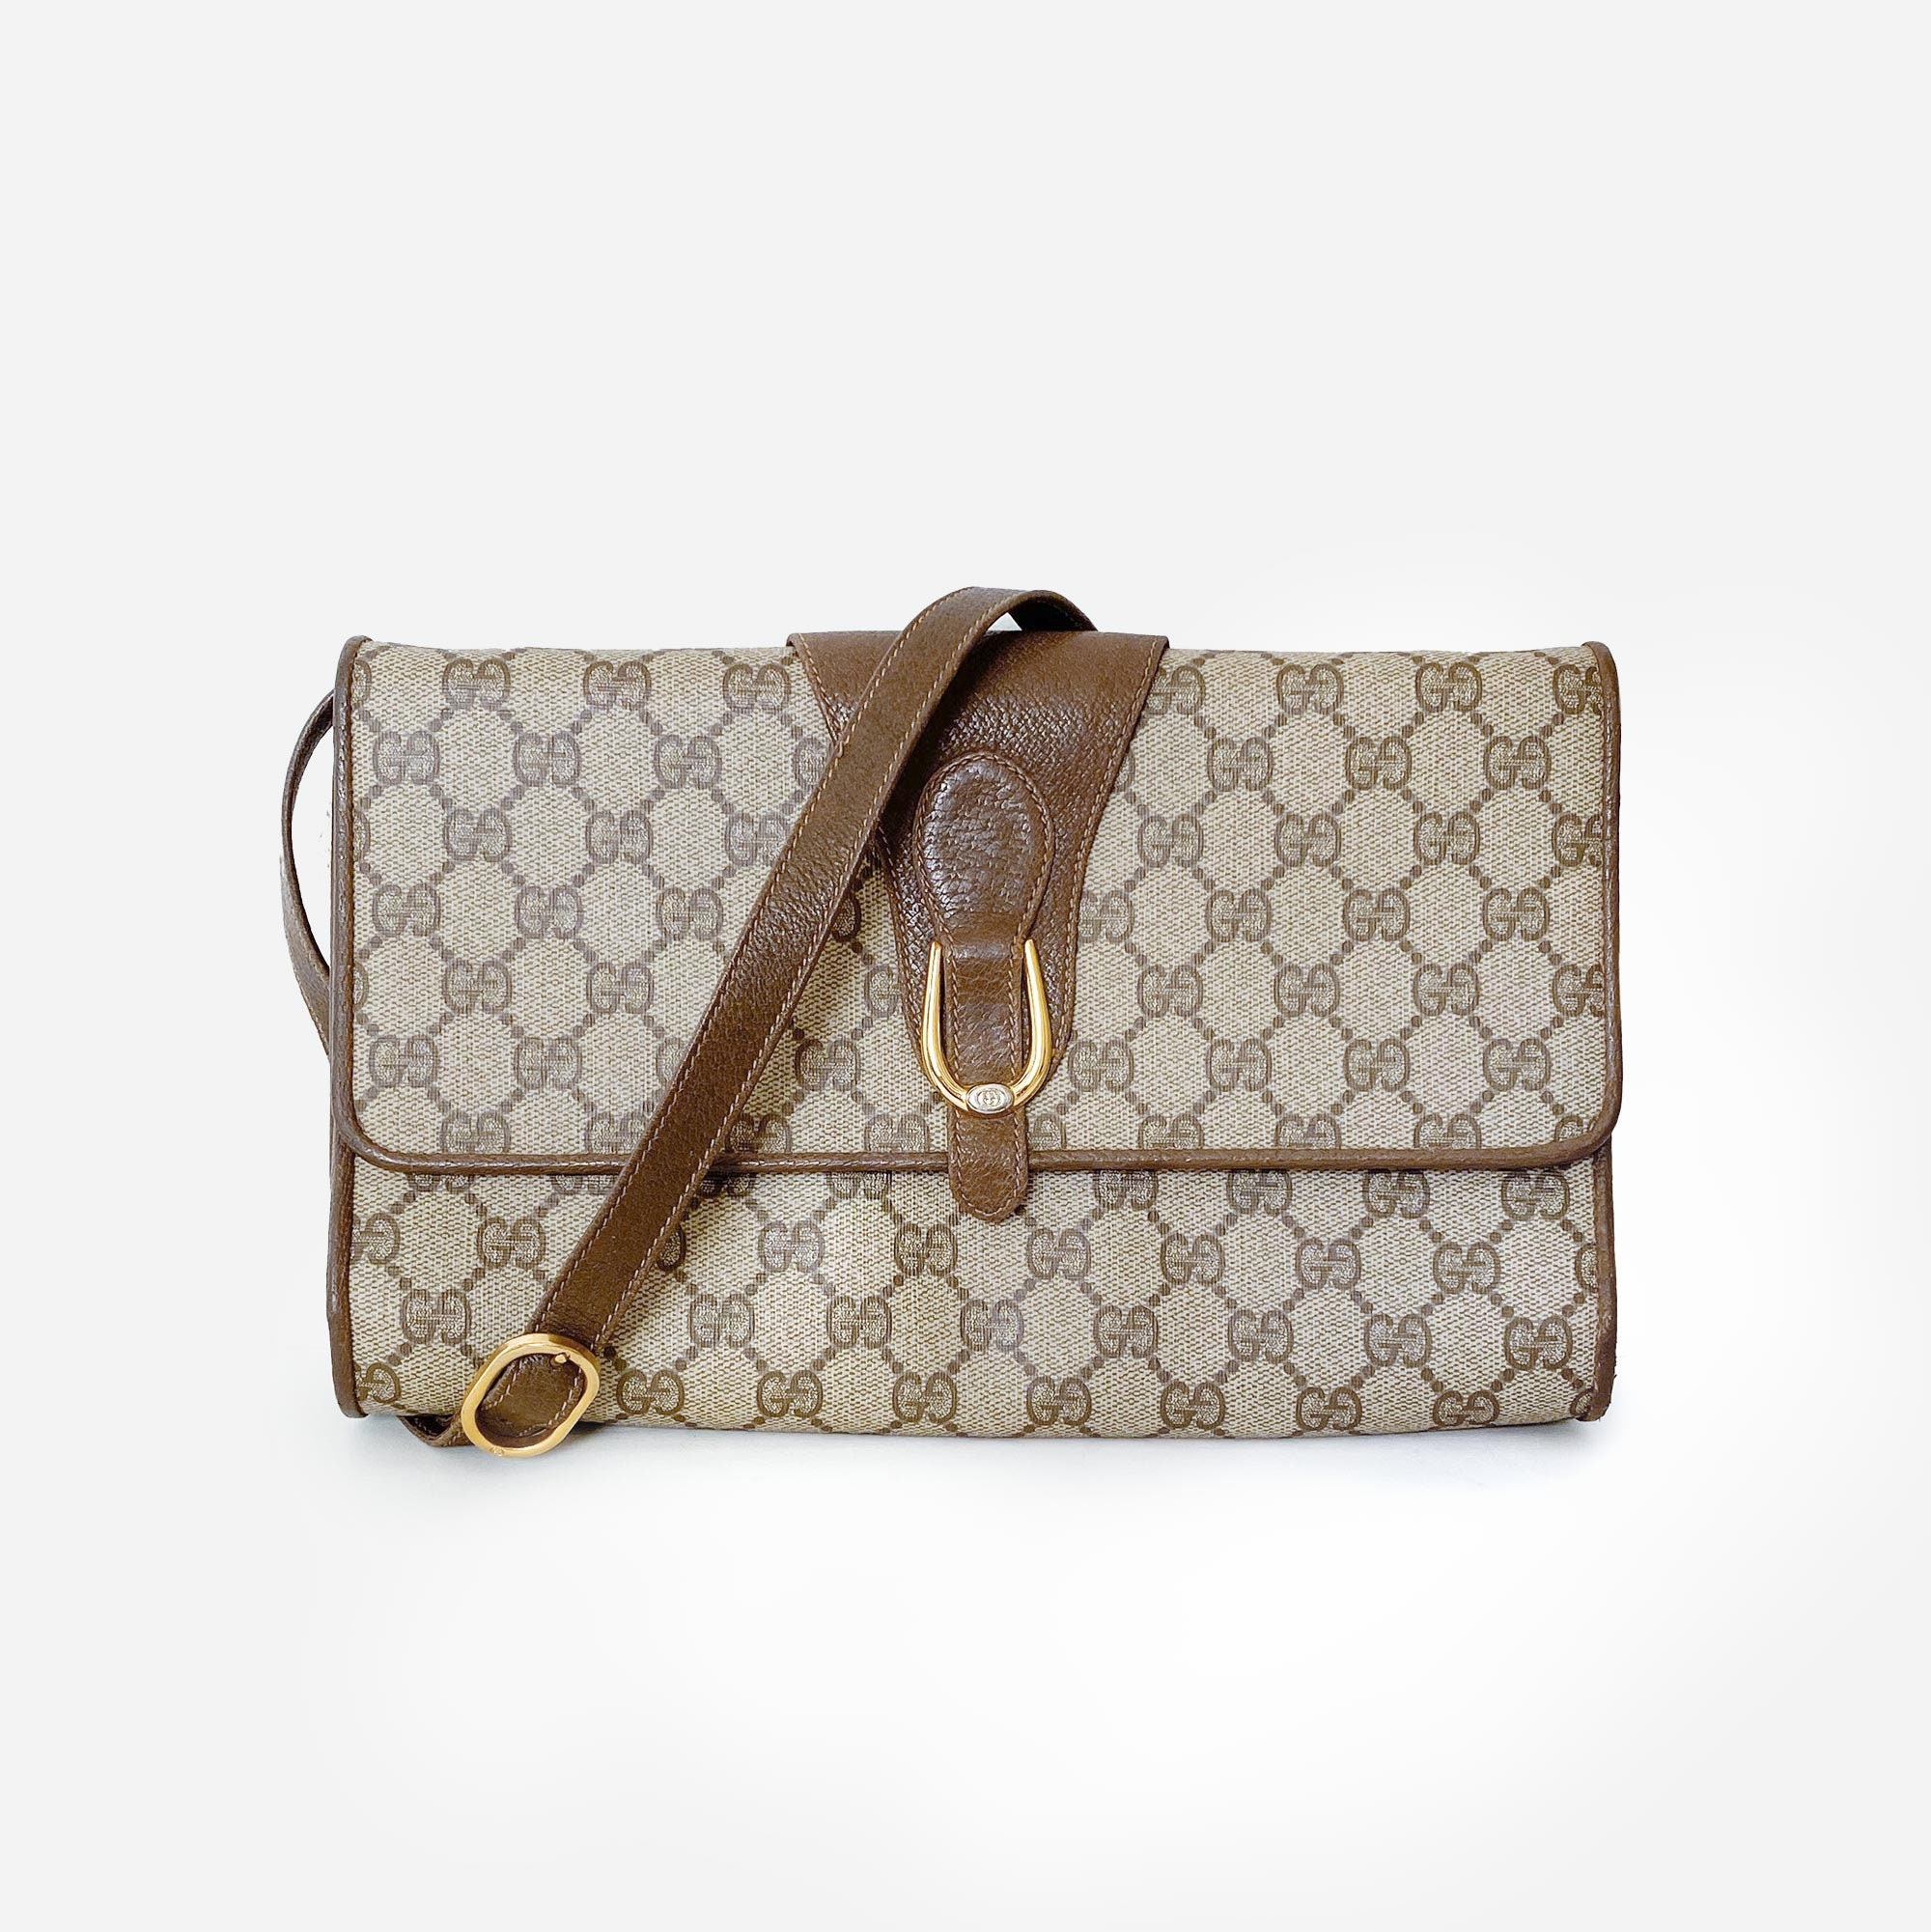 Chanel Vintage Clutch Bag 